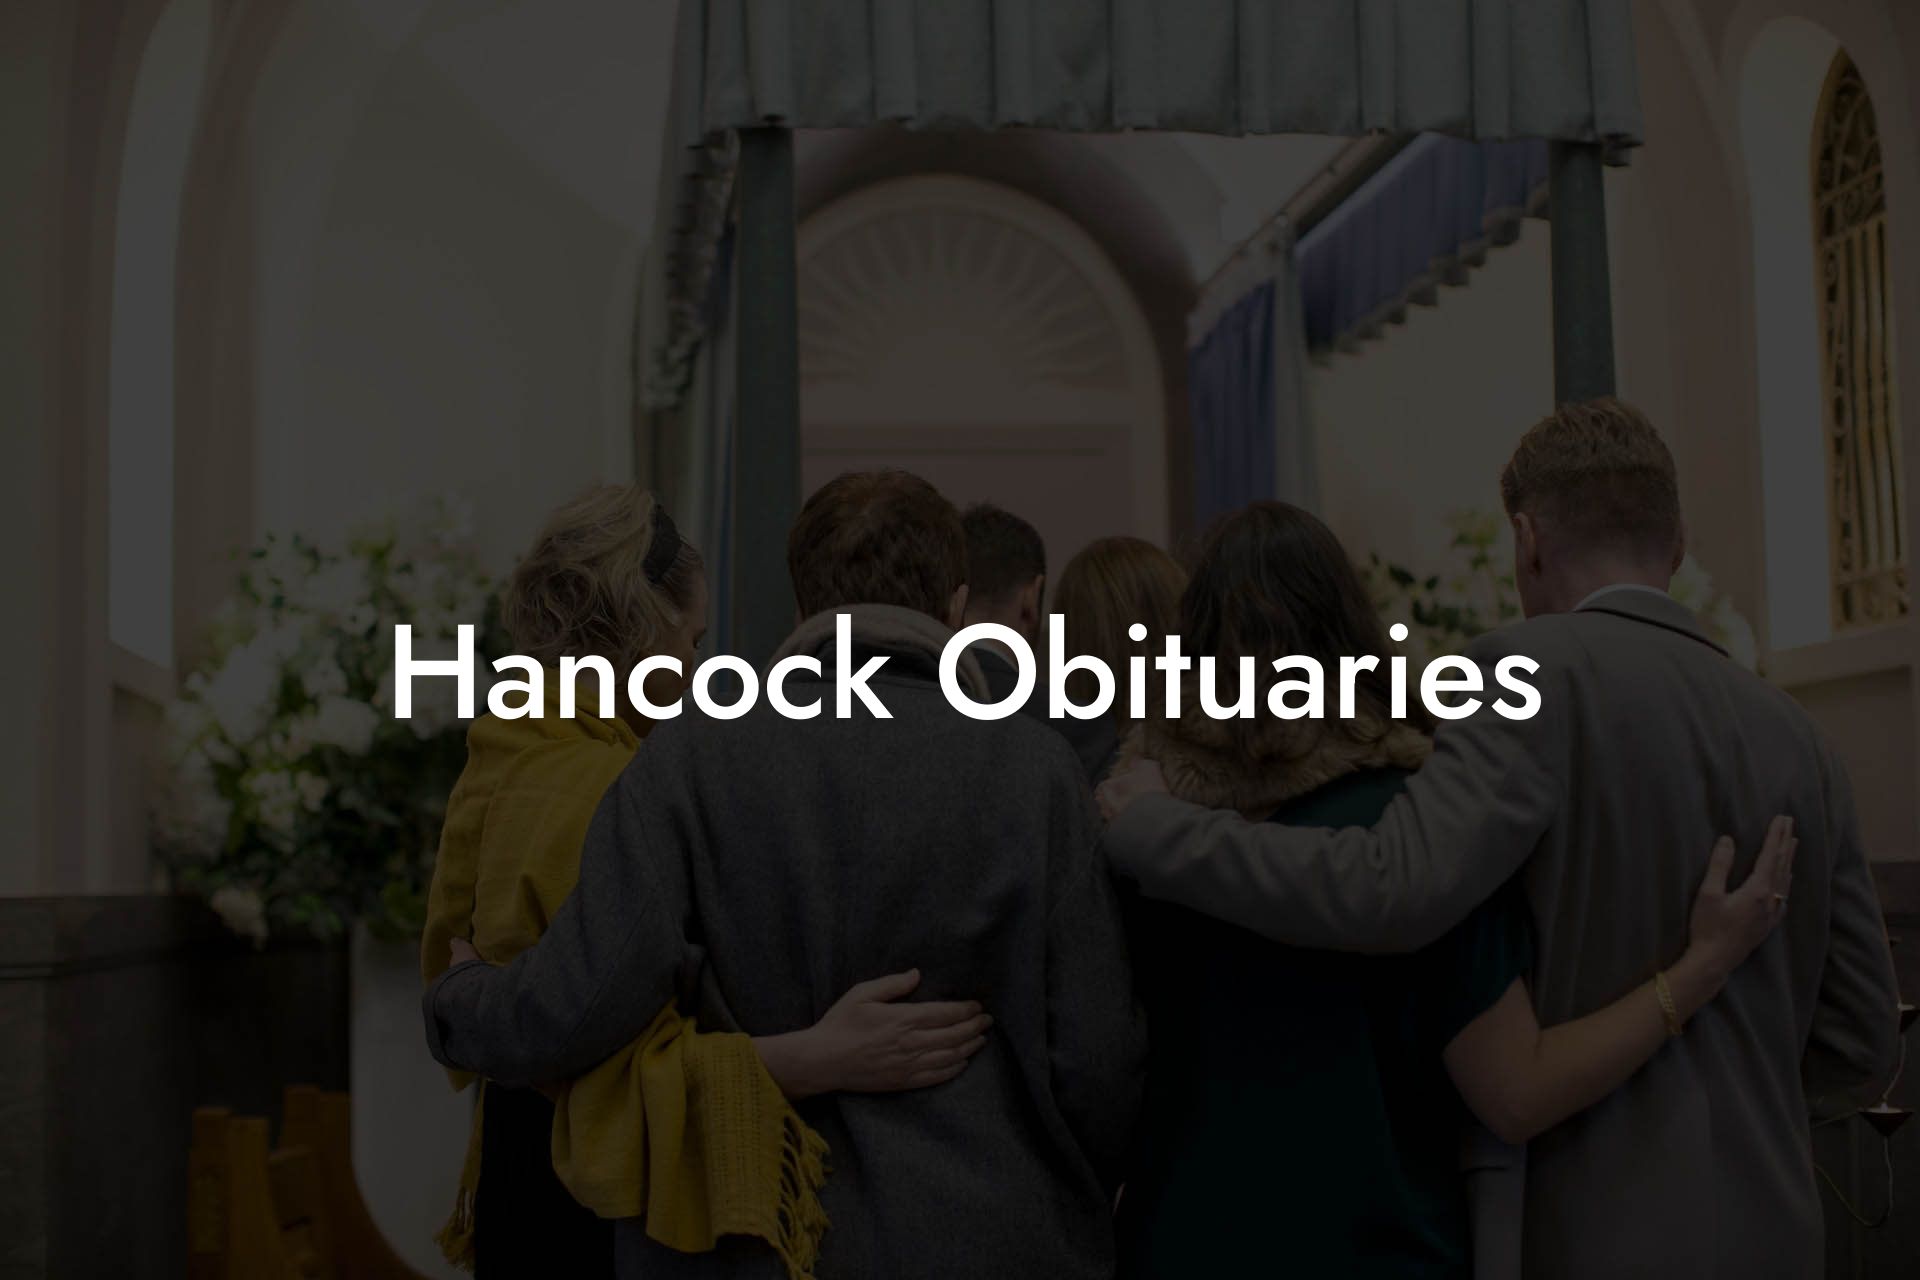 Hancock Obituaries